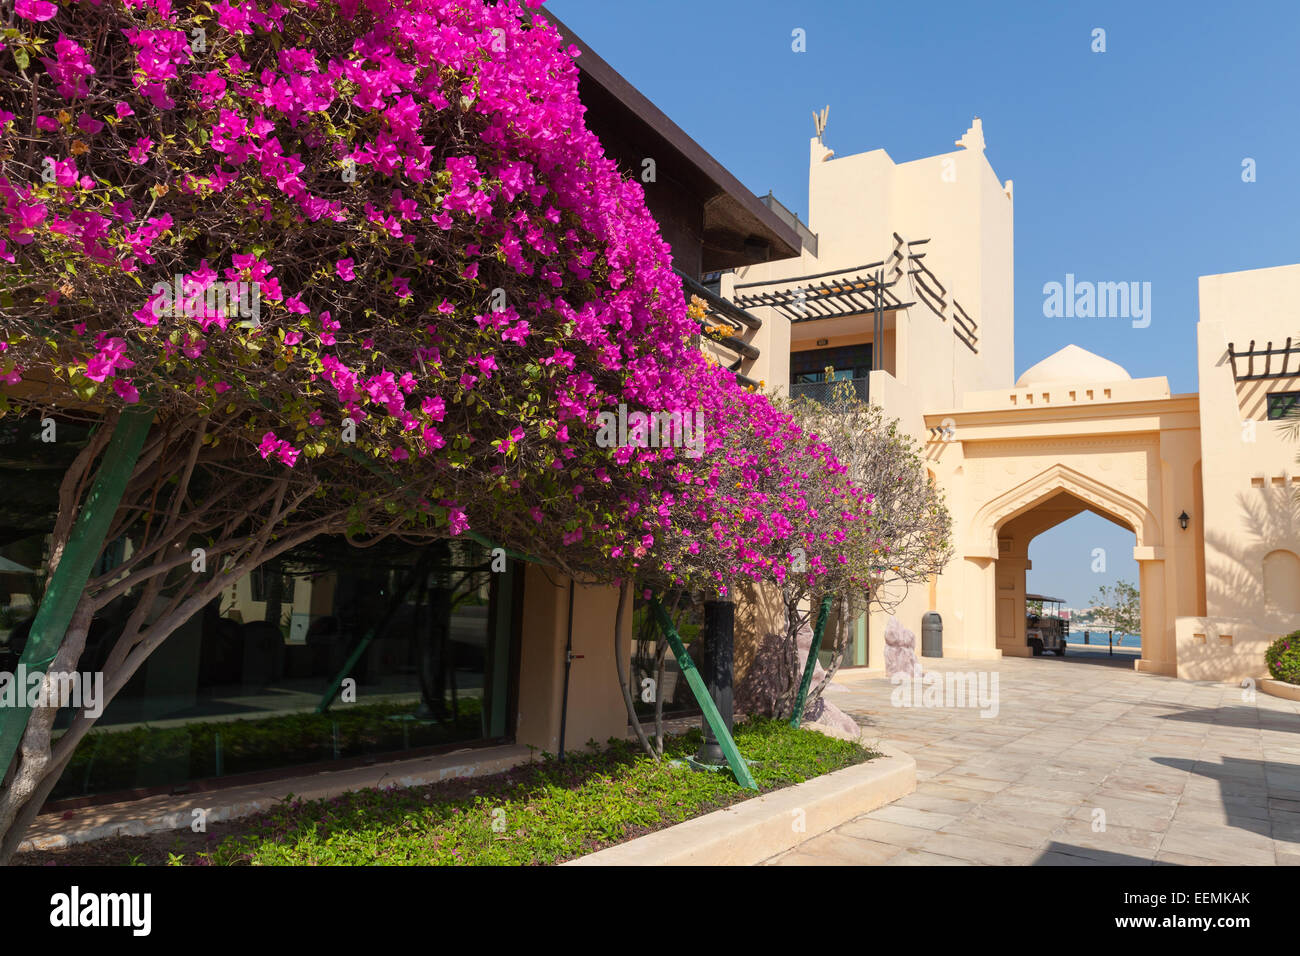 Maison Jaune avec passage de style arabe classique et arbustes à fleurs roses Banque D'Images